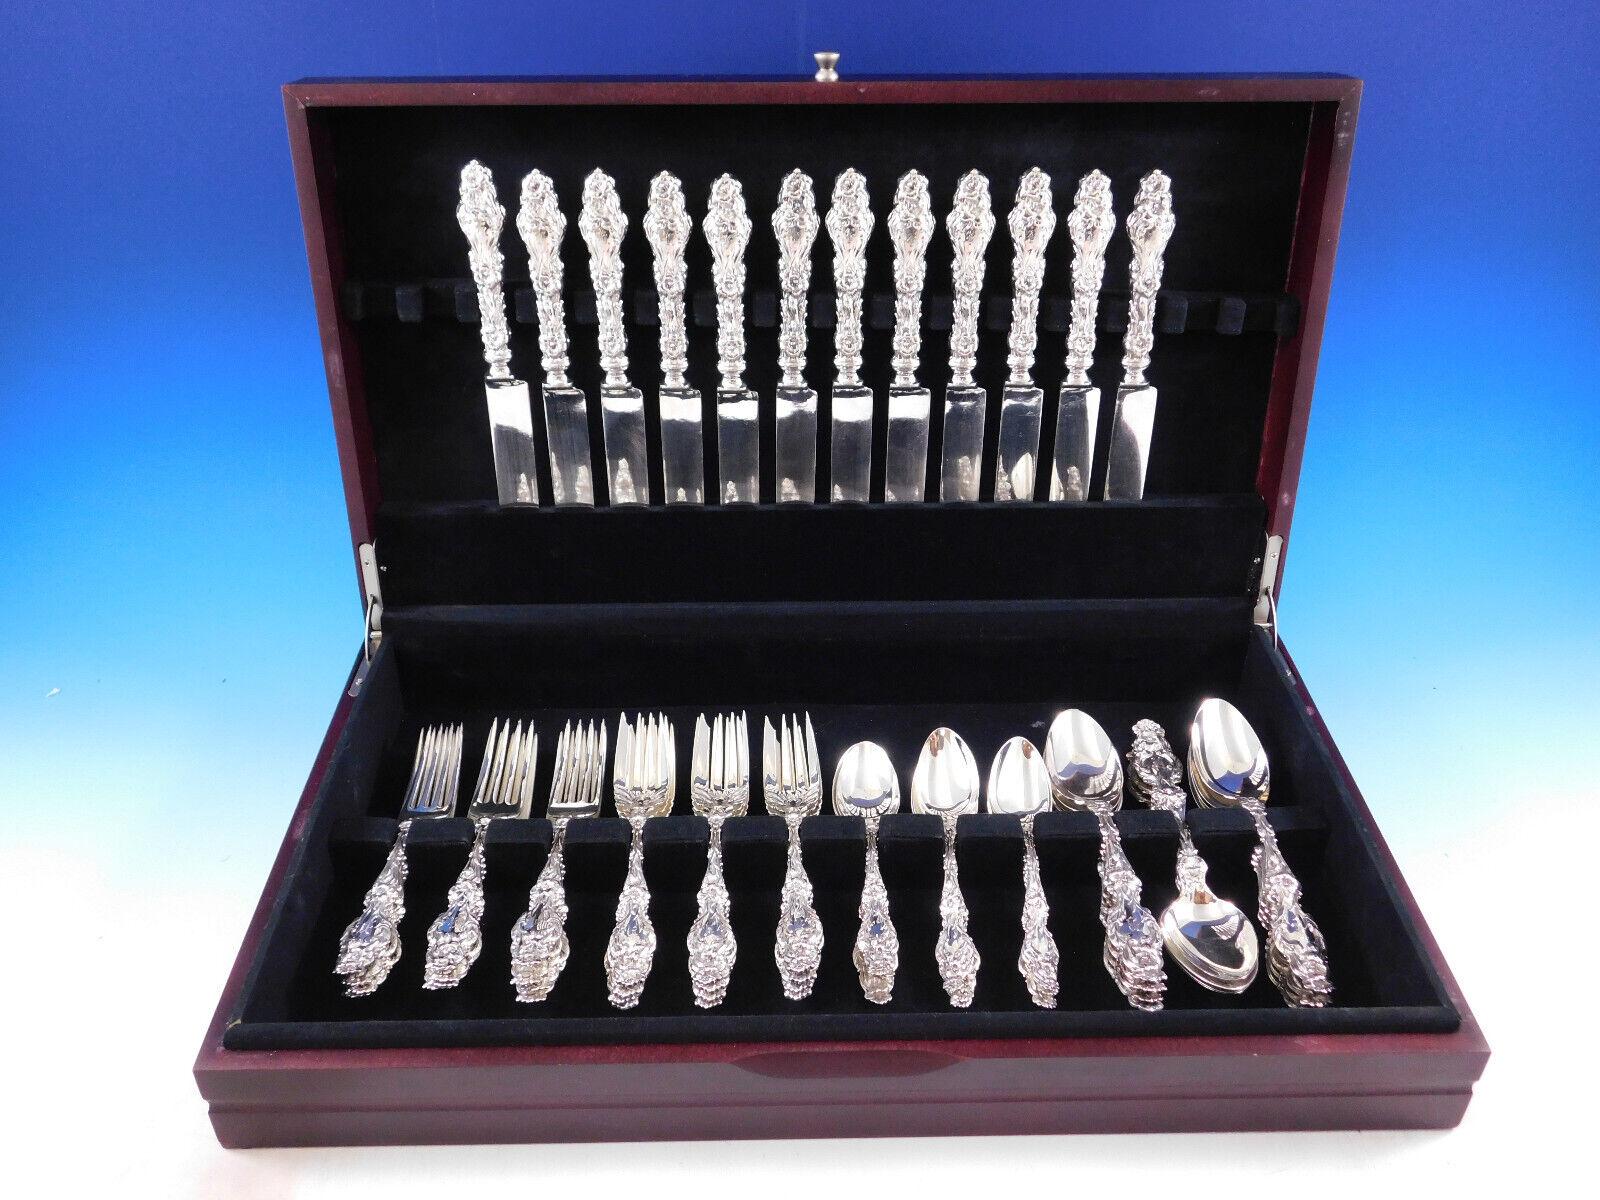 Schönes Lily by Whiting Sterling Silberbesteck - 60 Teile. Dieses Set enthält:

12 Messer mit stumpfen, versilberten Klingen, 9